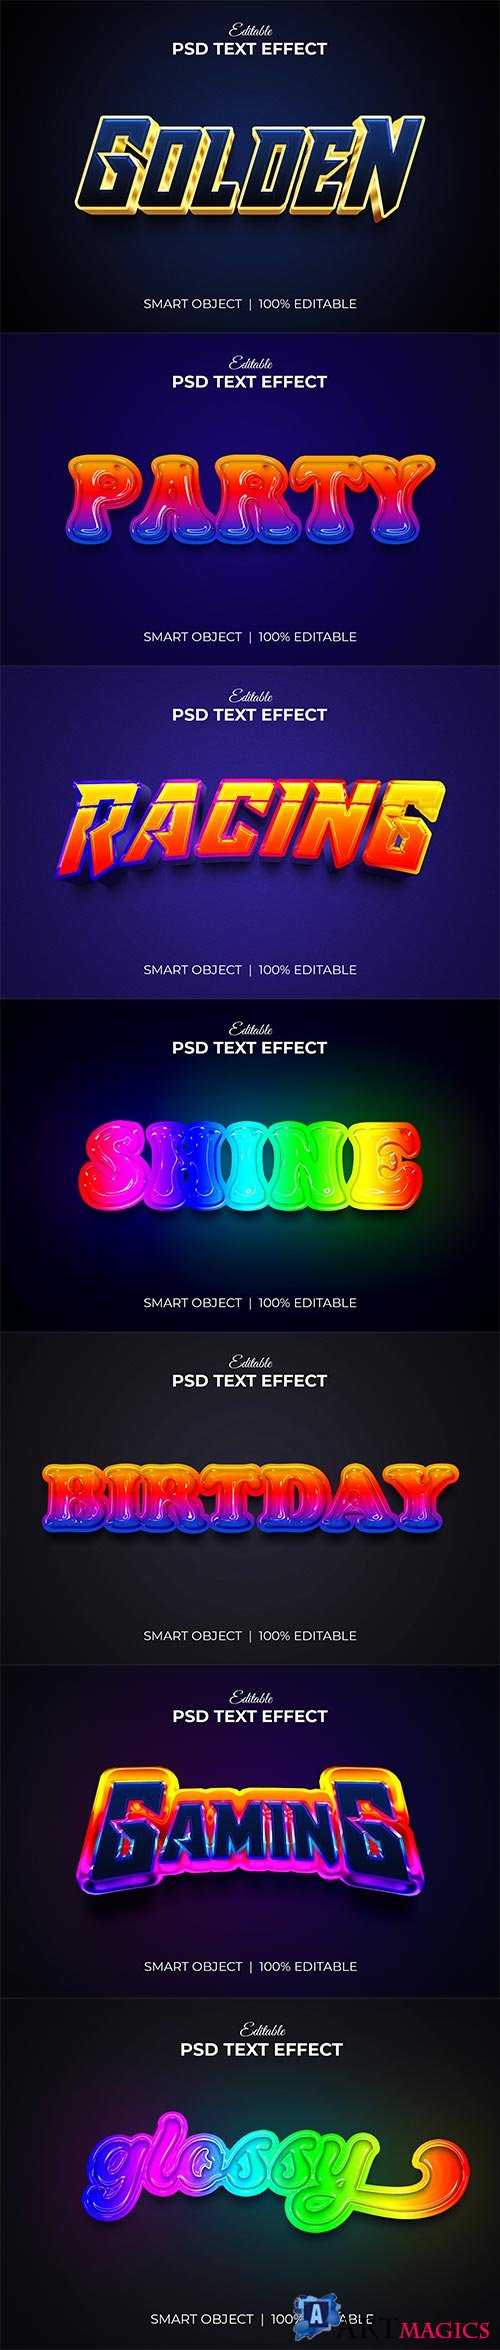 Psd text effect set vol 69